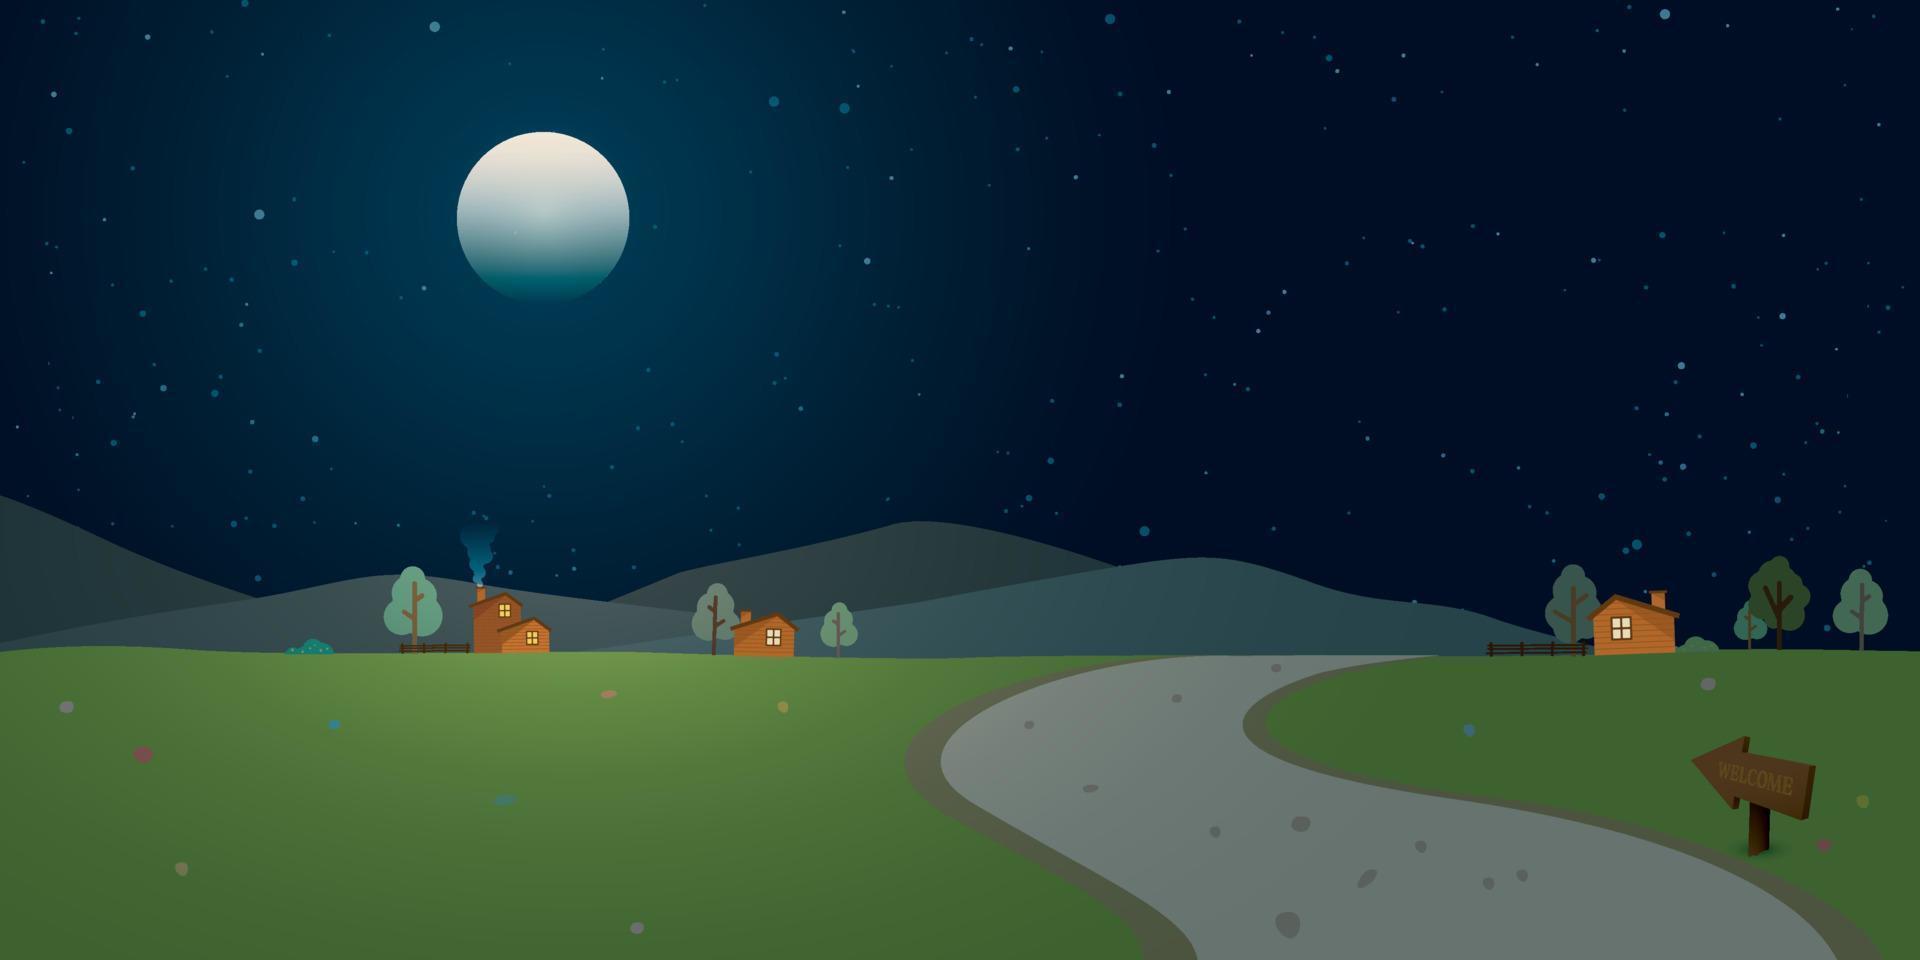 lokaal weg door de dorp naar heuvels Bij platteland landschap Bij nacht met volle maan en een veel van sterren in de lucht vector illustratie.